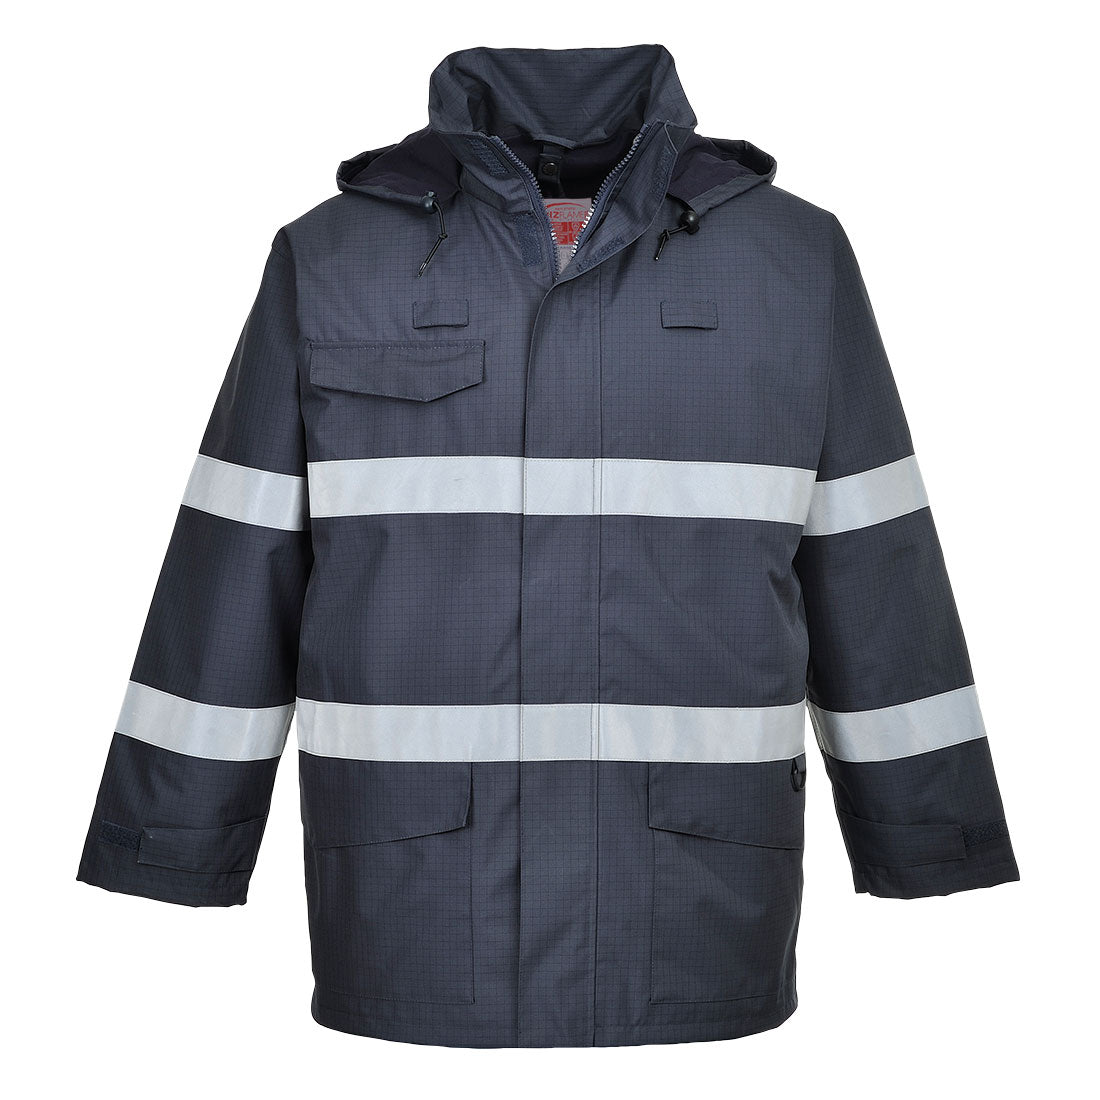 Bizflame Rain Multi Protection Jacket, Morgans PW